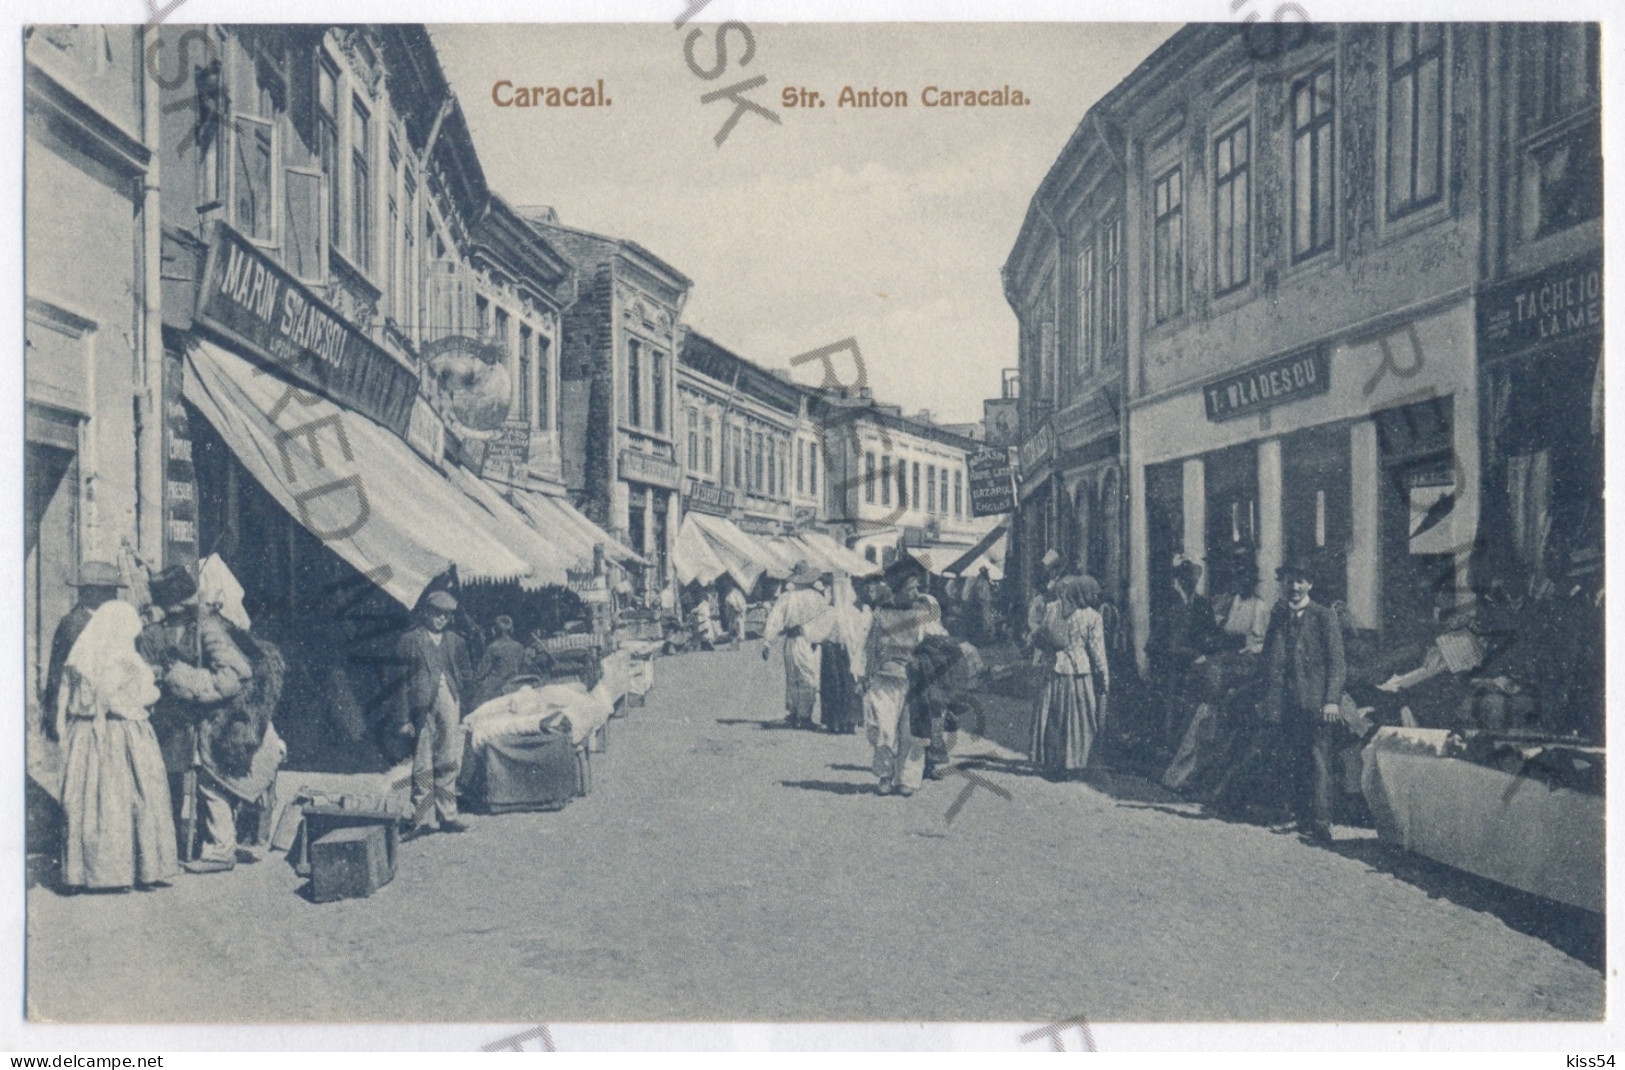 RO 87 - 11832 Olt, CARACAL - Old Postcard - Unused - Roemenië